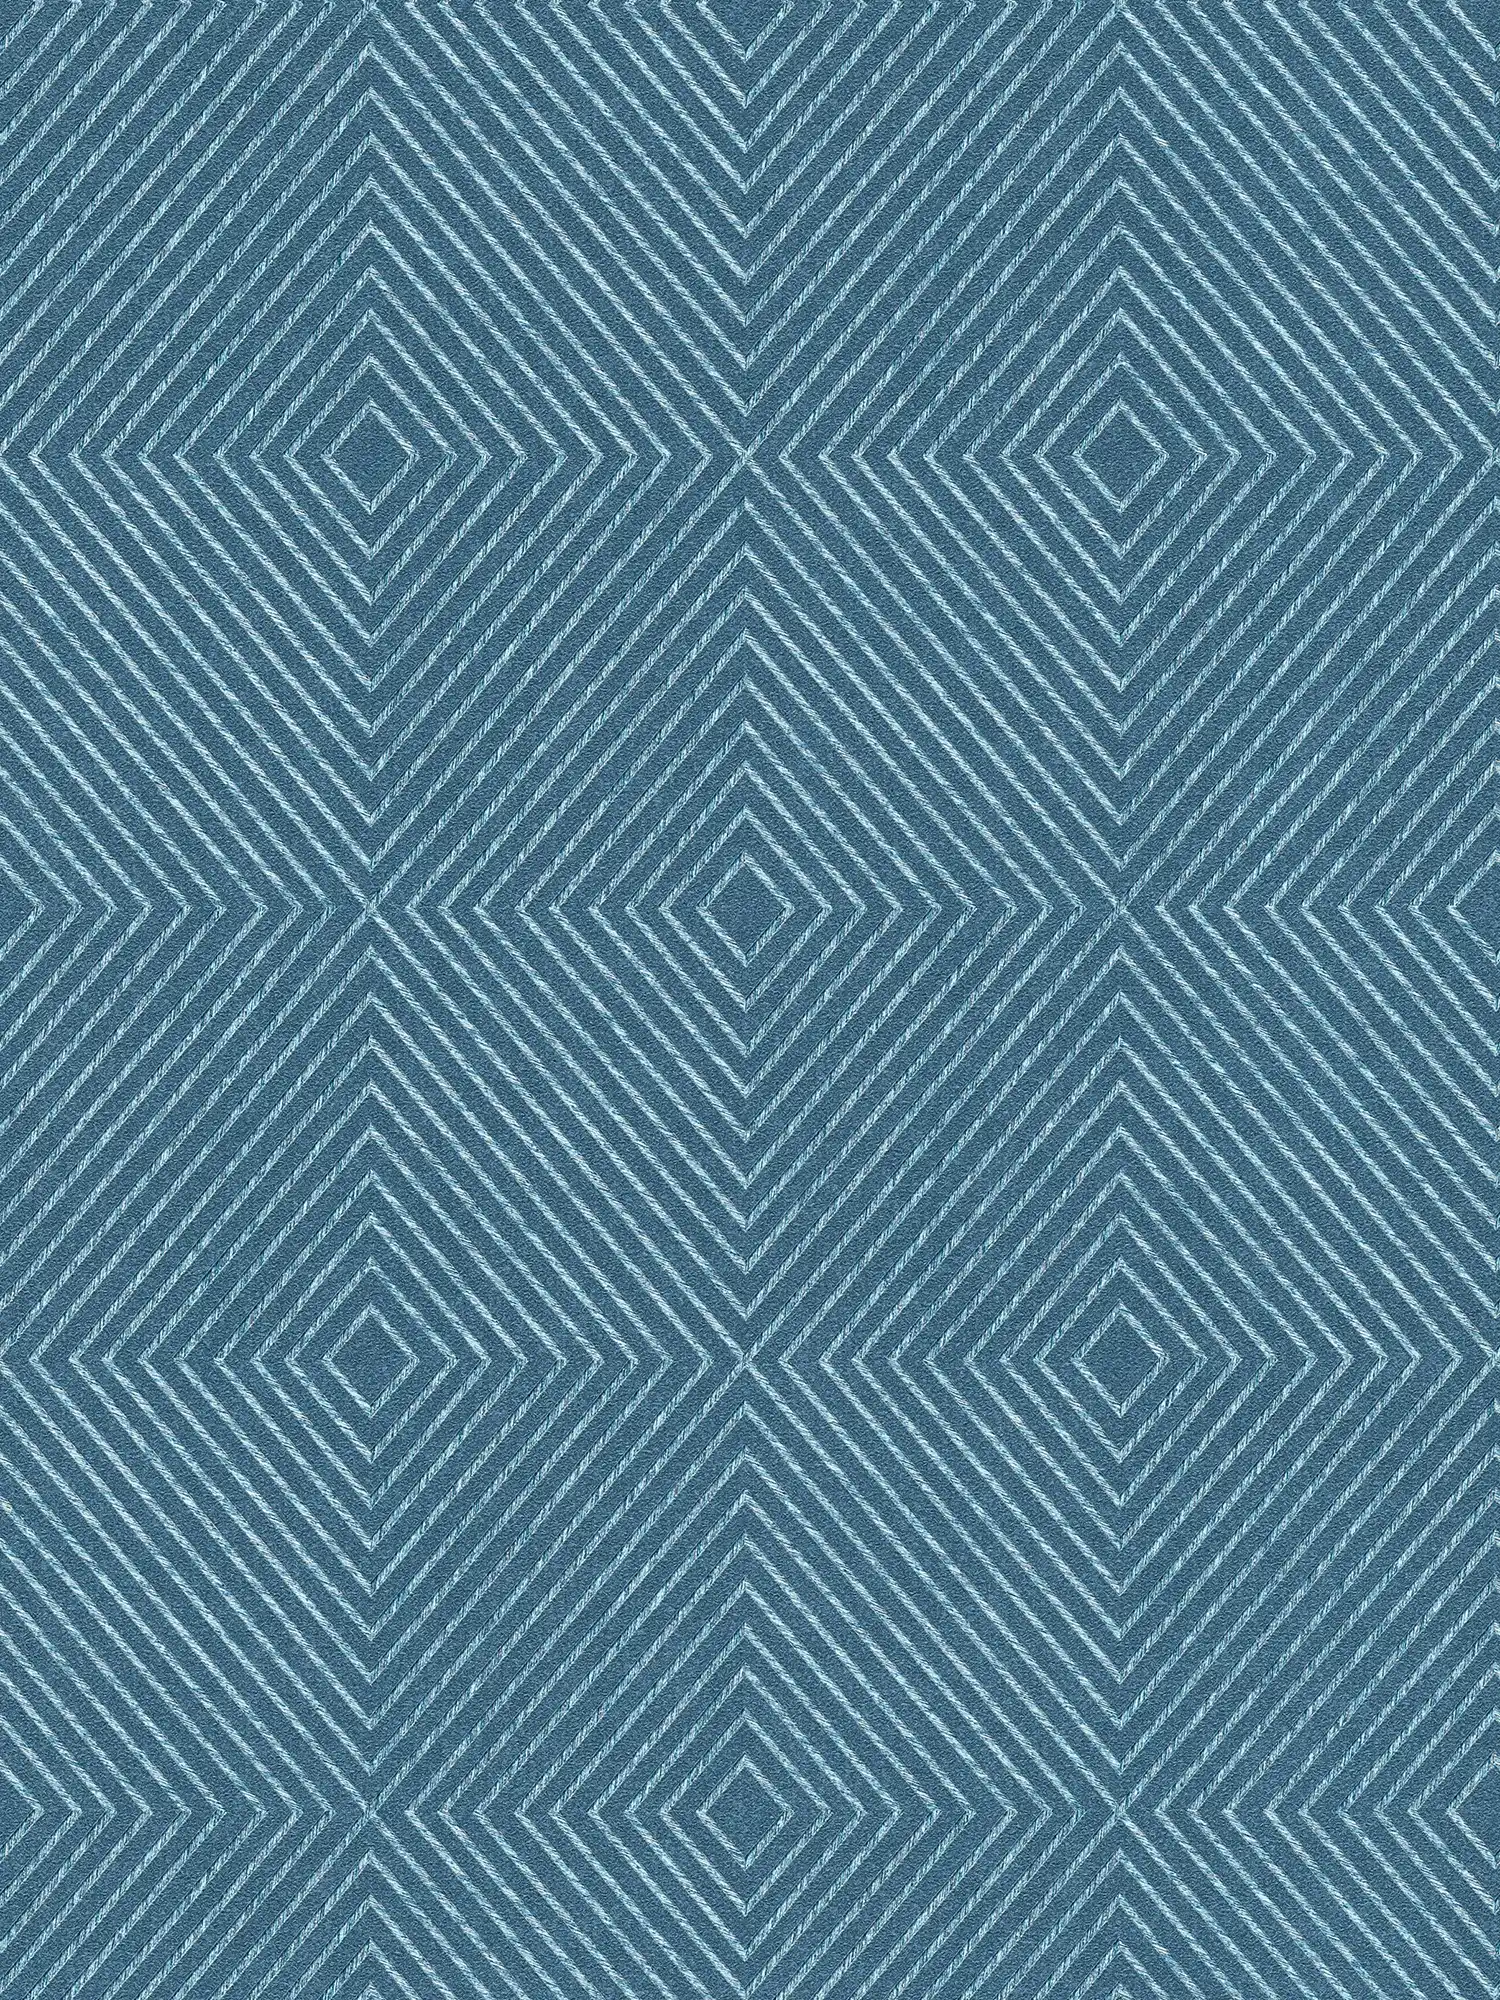 Behang grafisch ontwerp, Scandinavische stijl - blauw, zilver
